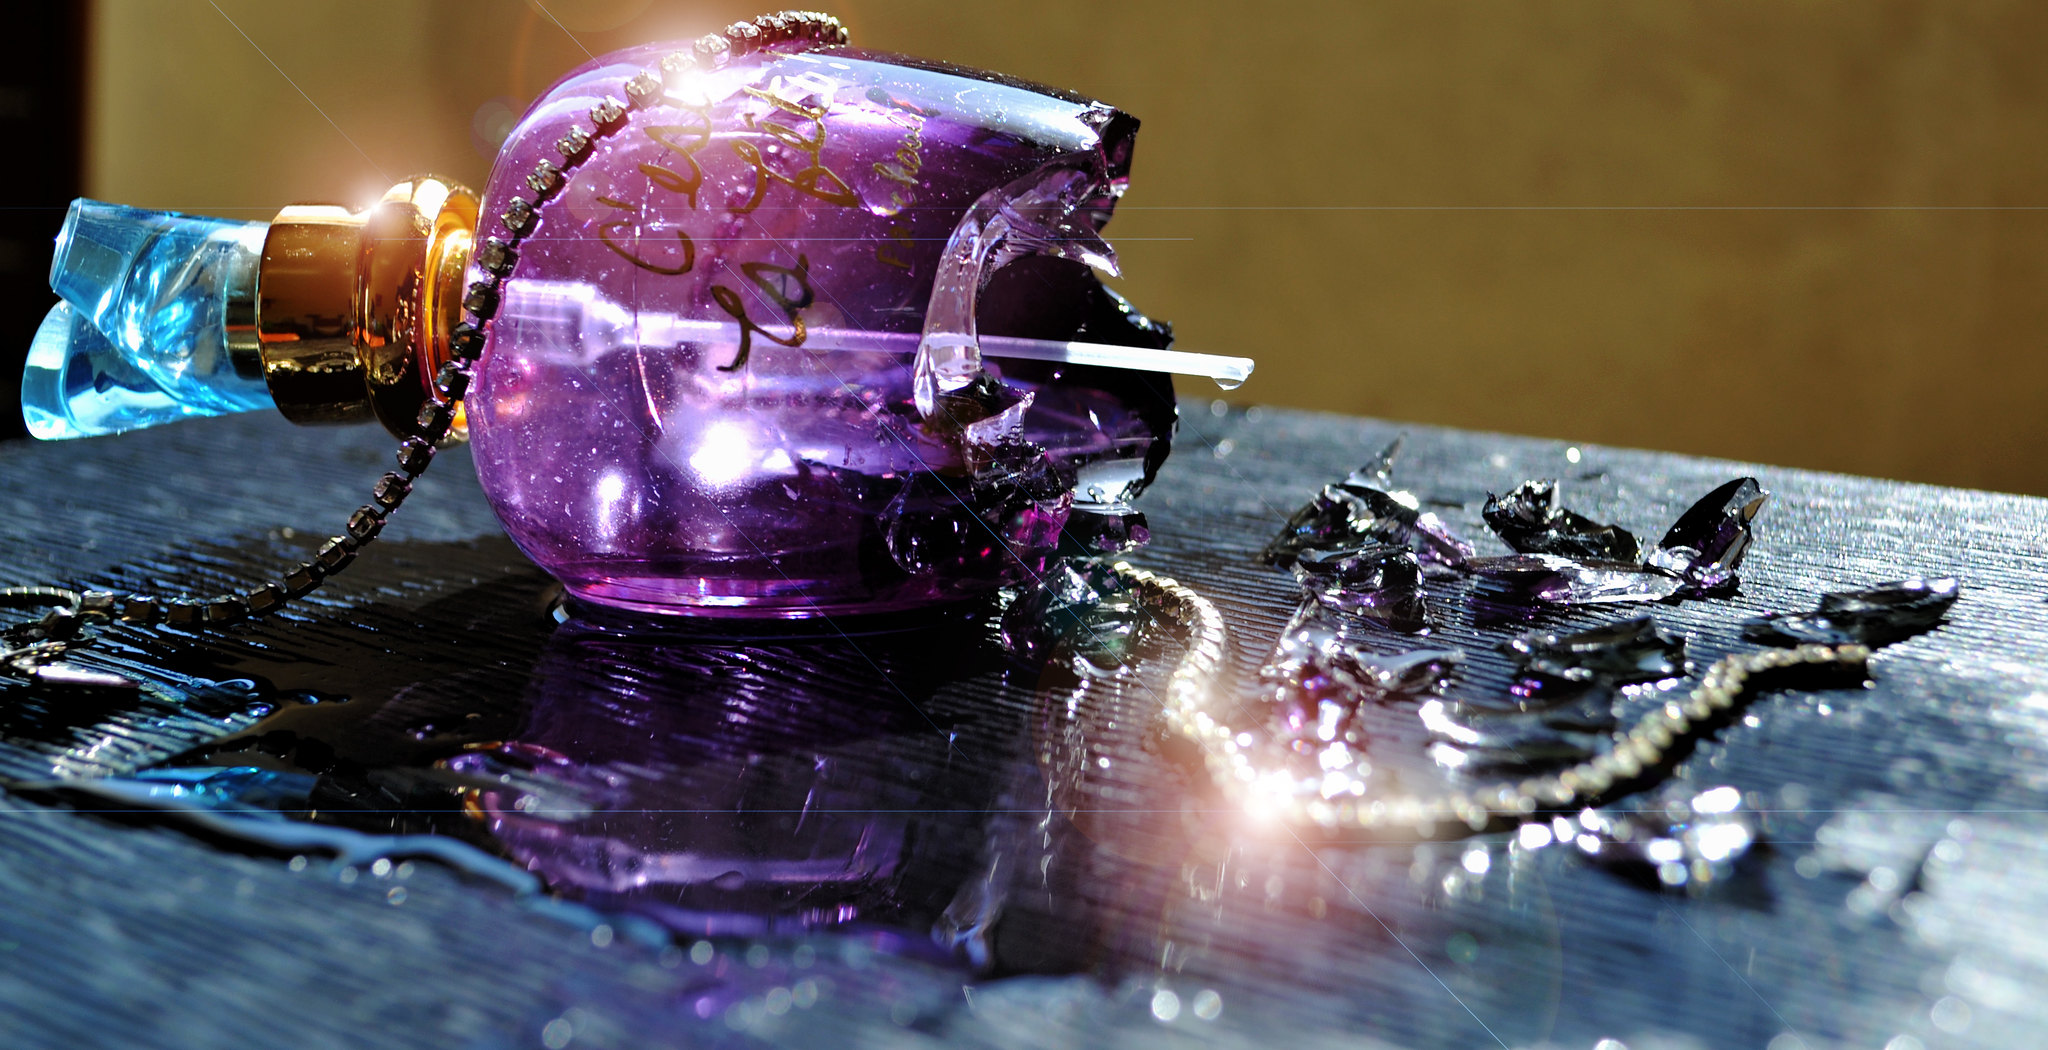 Frasco de perfume roto | Fuente: Flickr